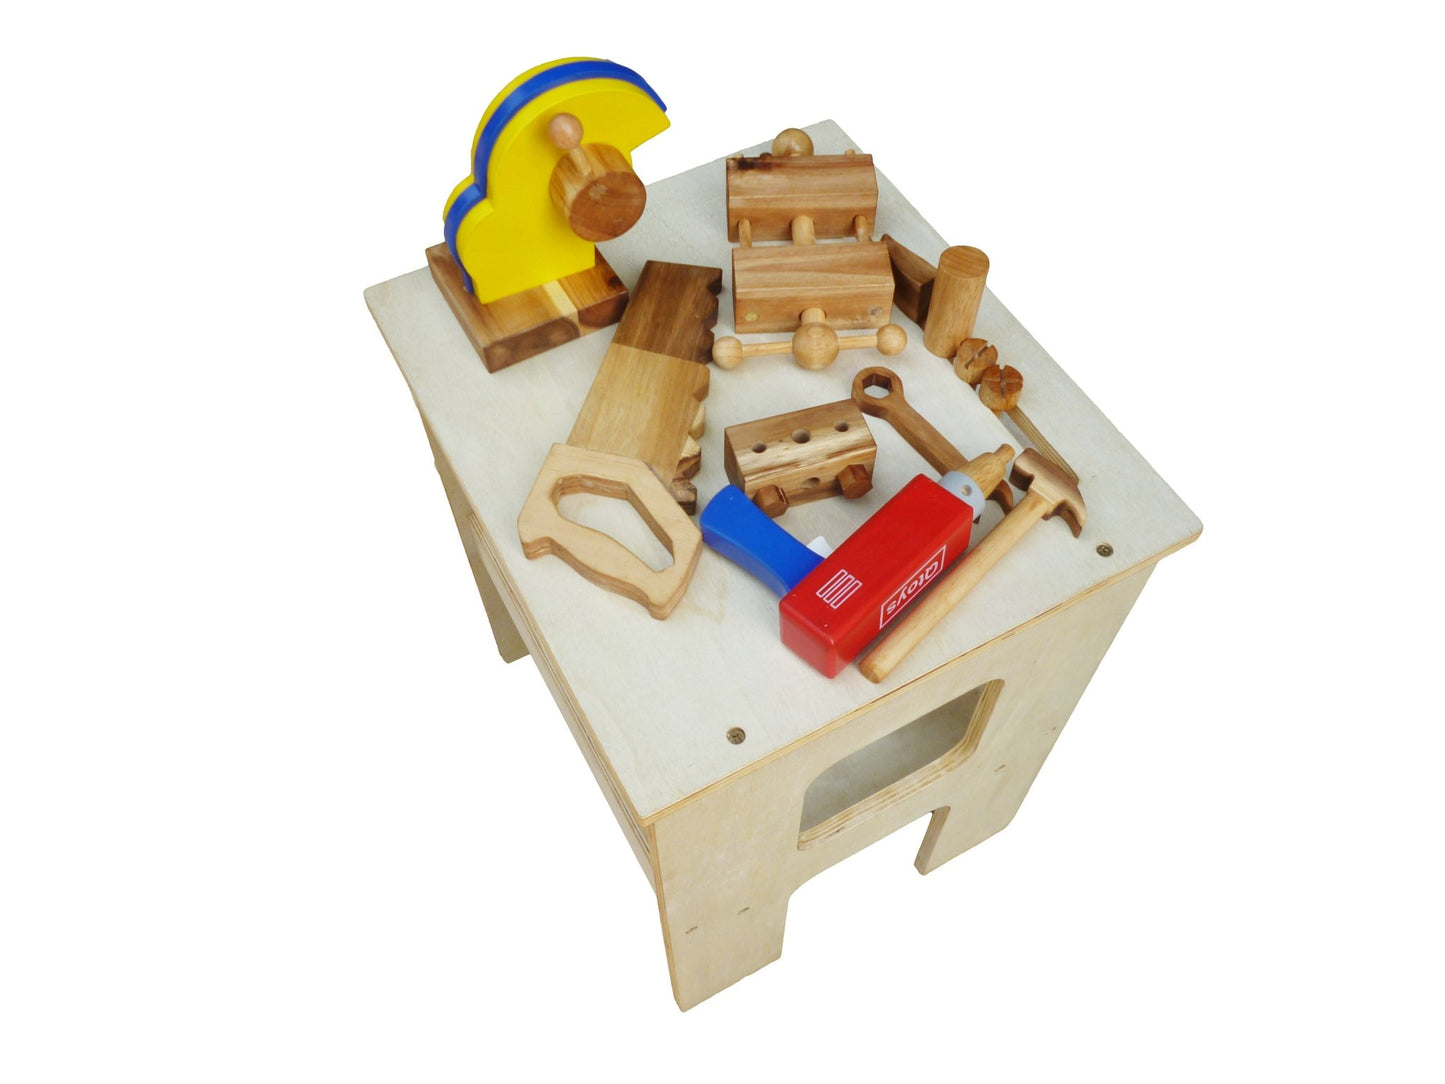 Wooden Work Bench - Little Kids Business